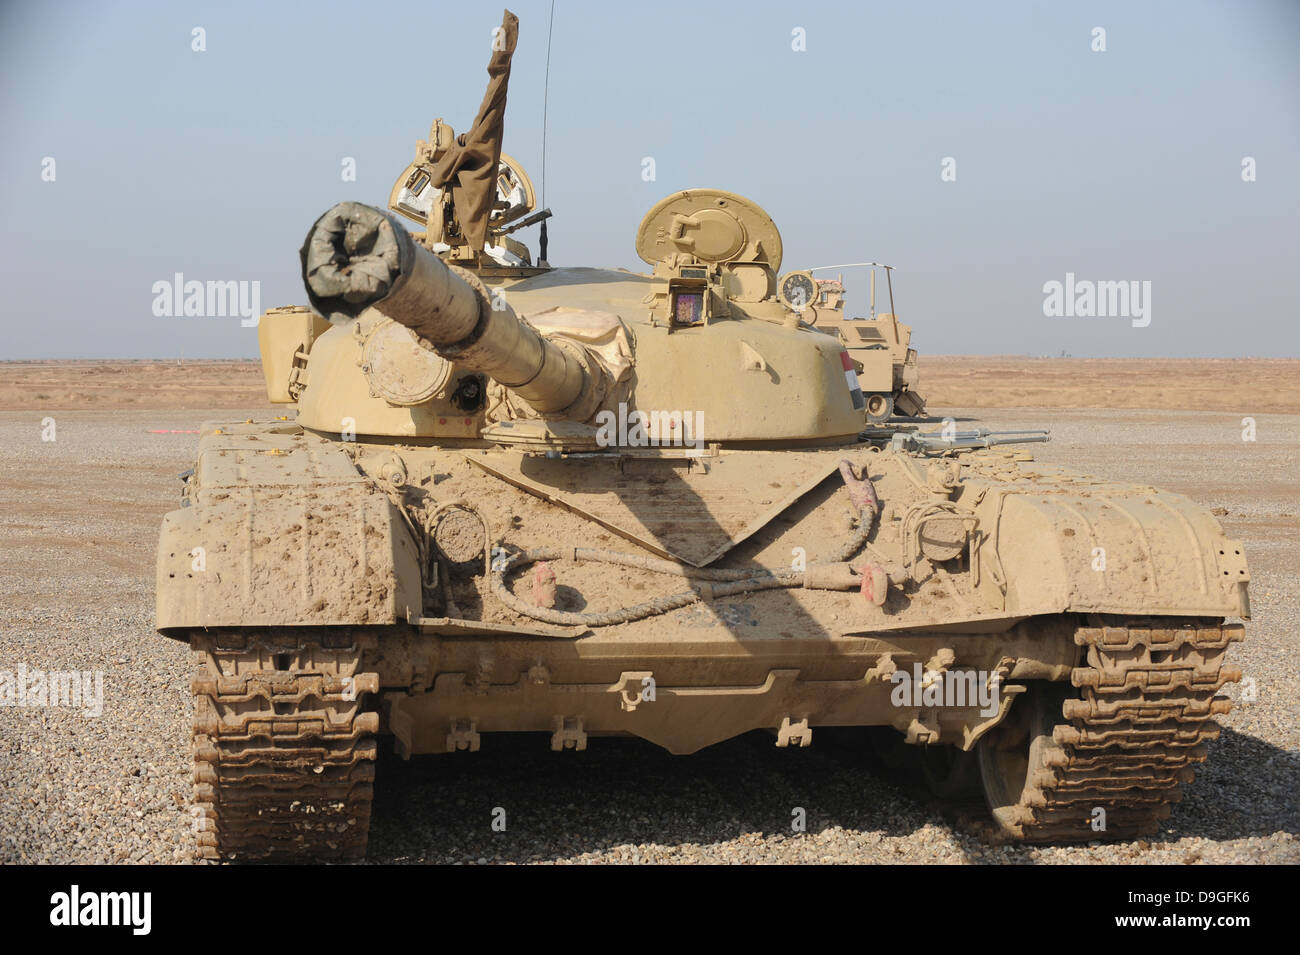 27 octobre 2008 - Un Irakien T-72 tank à l'Besmaya de tir, de l'Iraq. Banque D'Images